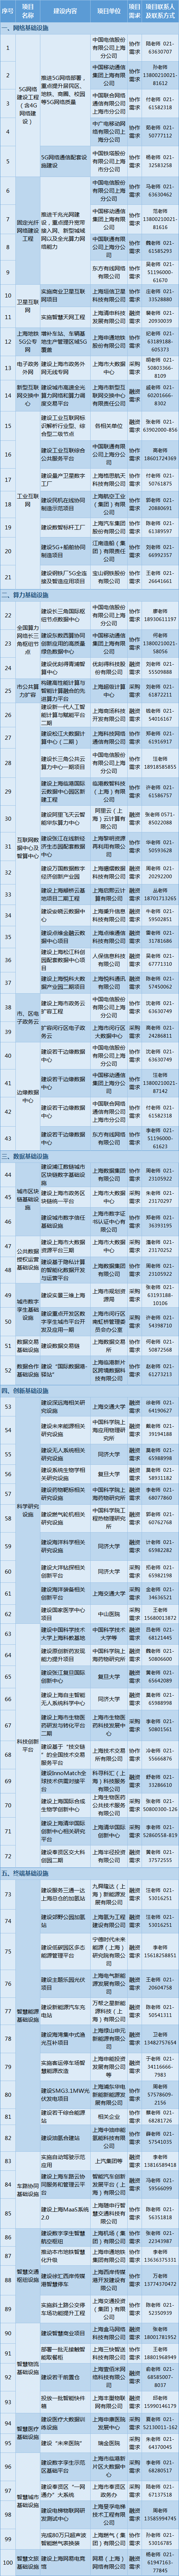 上海市新型基础设施重大项目清单